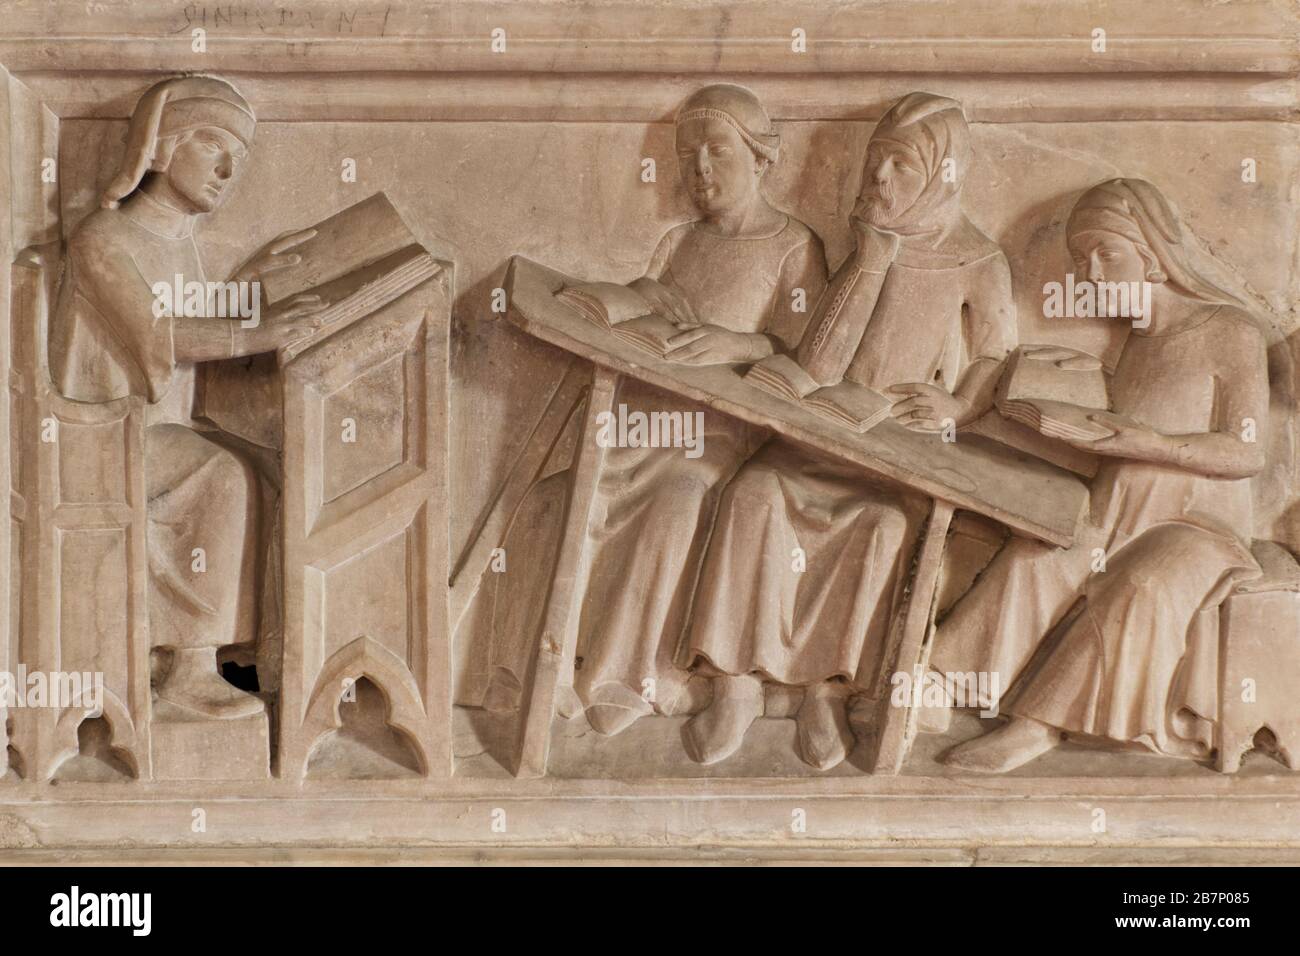 Eine mittelalterliche Lektion - Detail des Grabes des Cino da Pistoia (14. Jahrhundert) von Agostino di Giovanni - Duomo - Pistoia Stockfoto